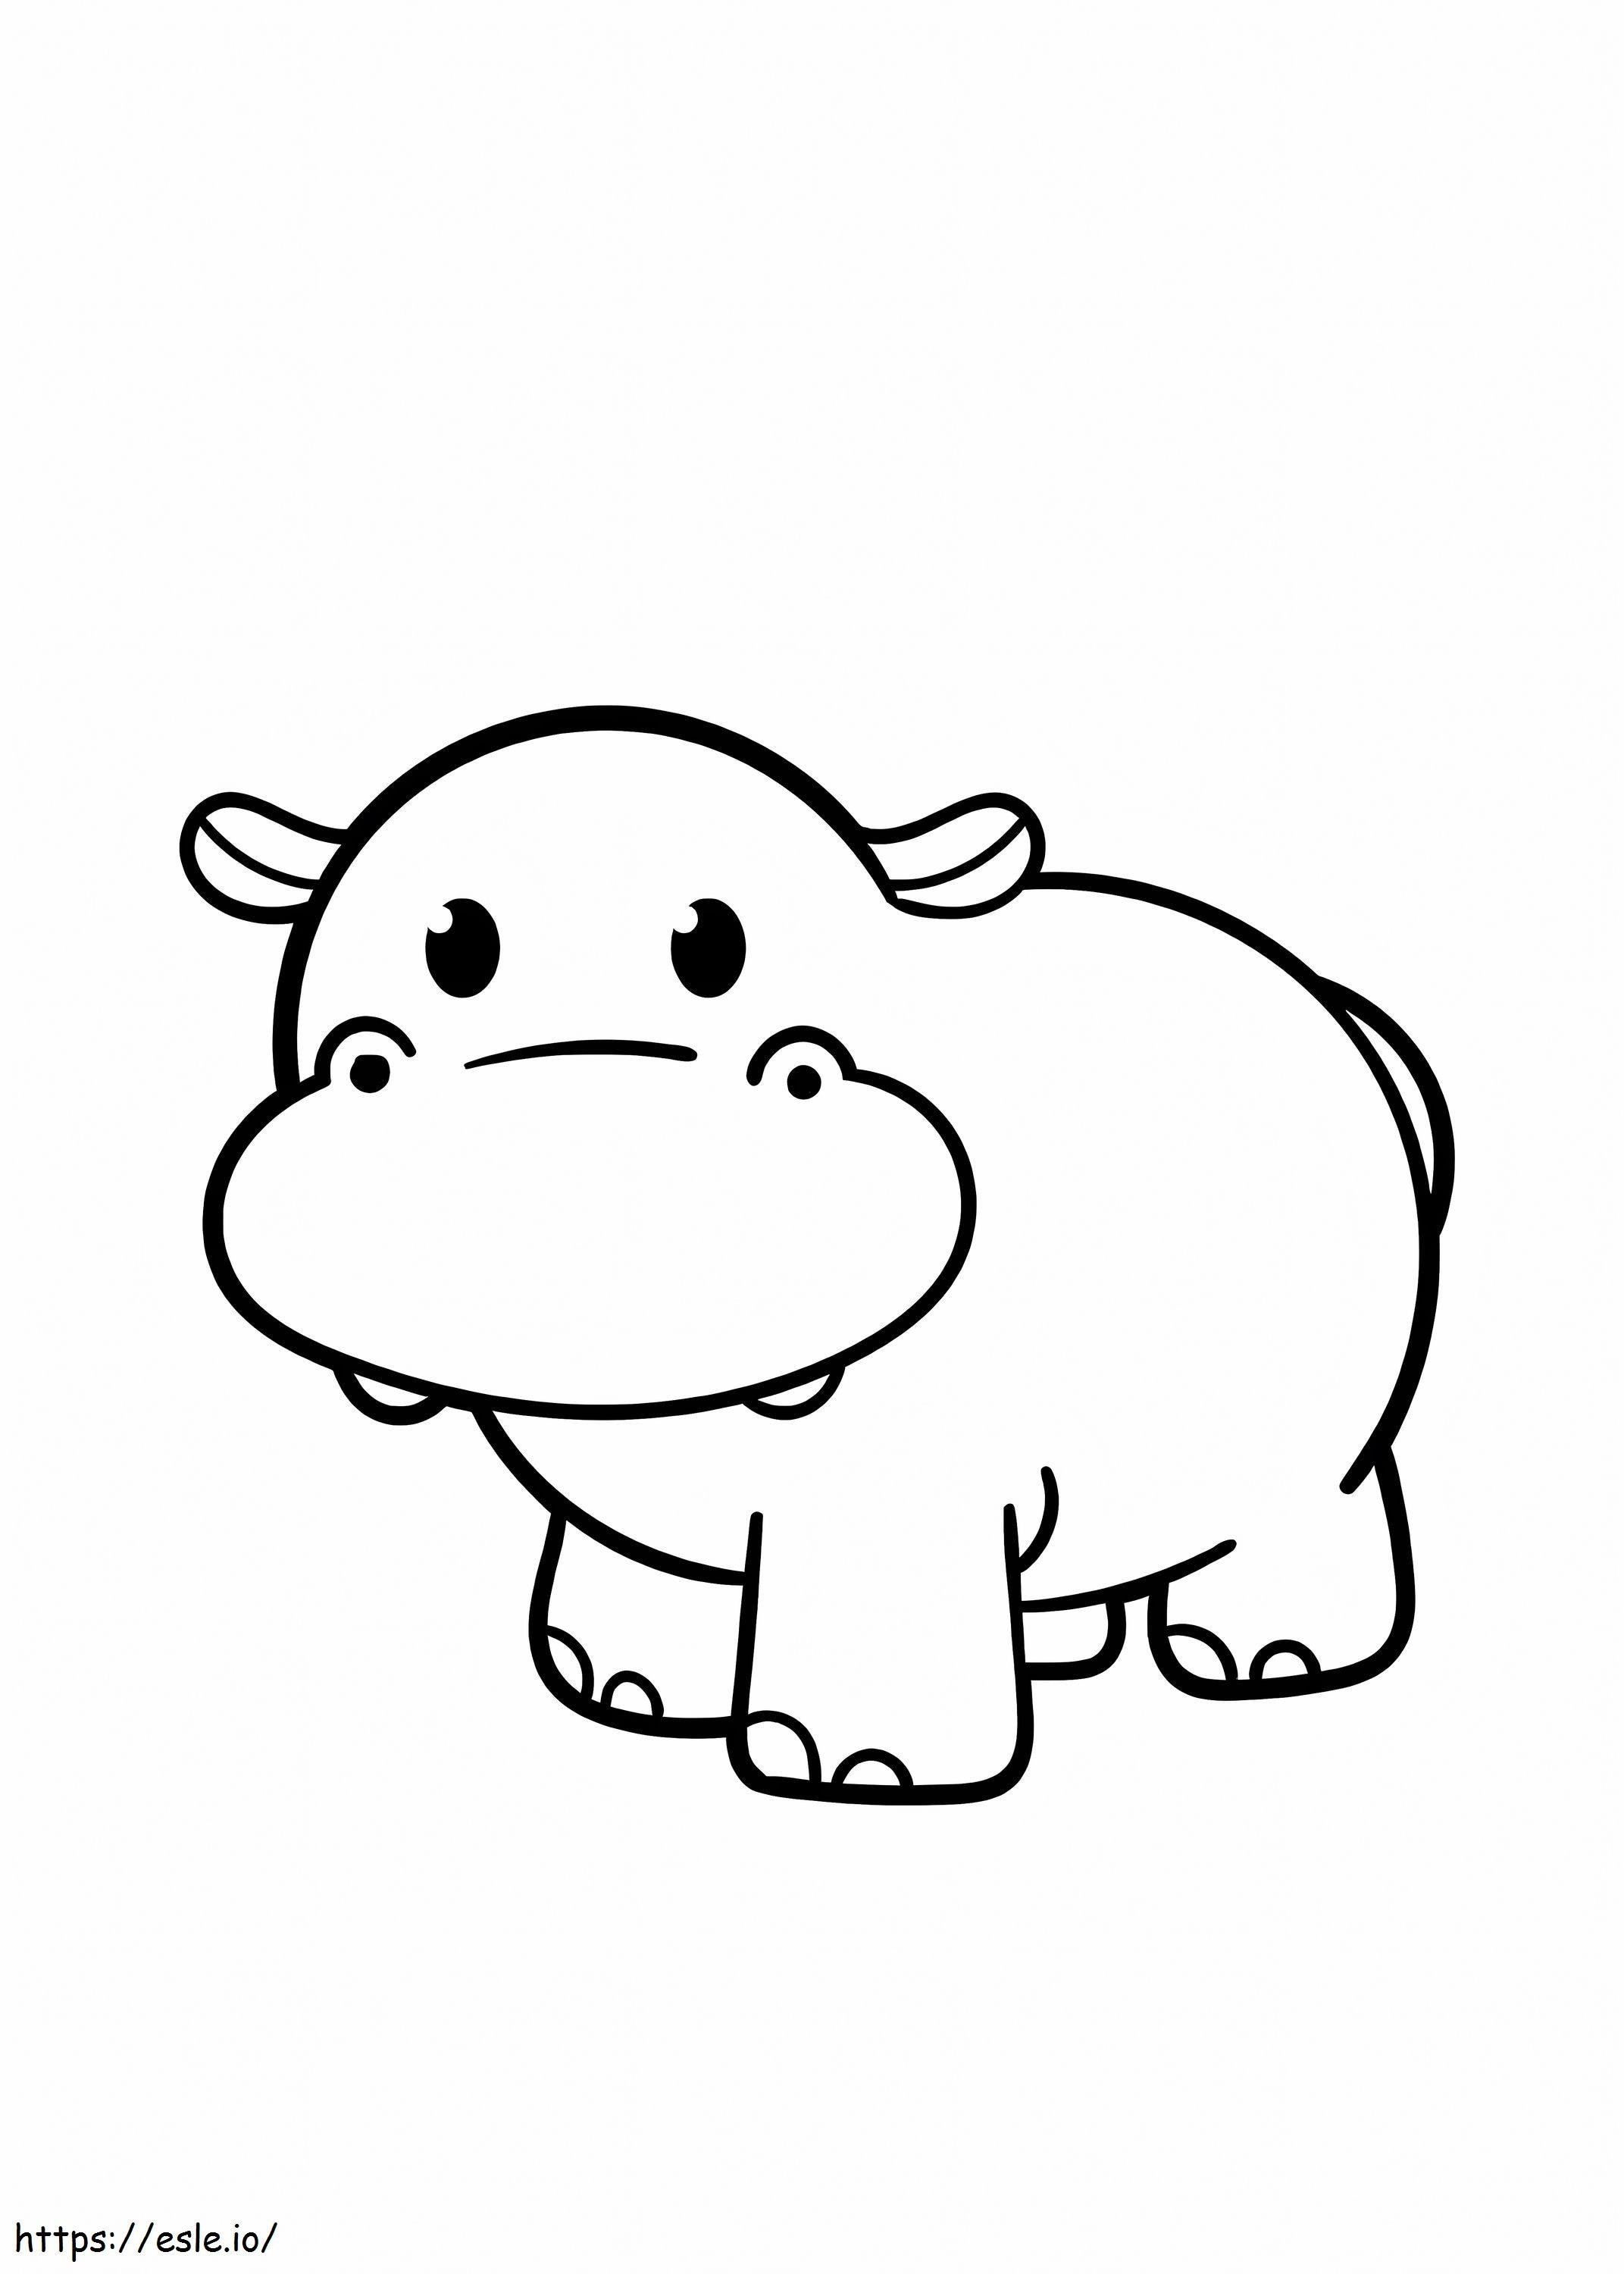 Coloriage Adorable hippopotame à imprimer dessin